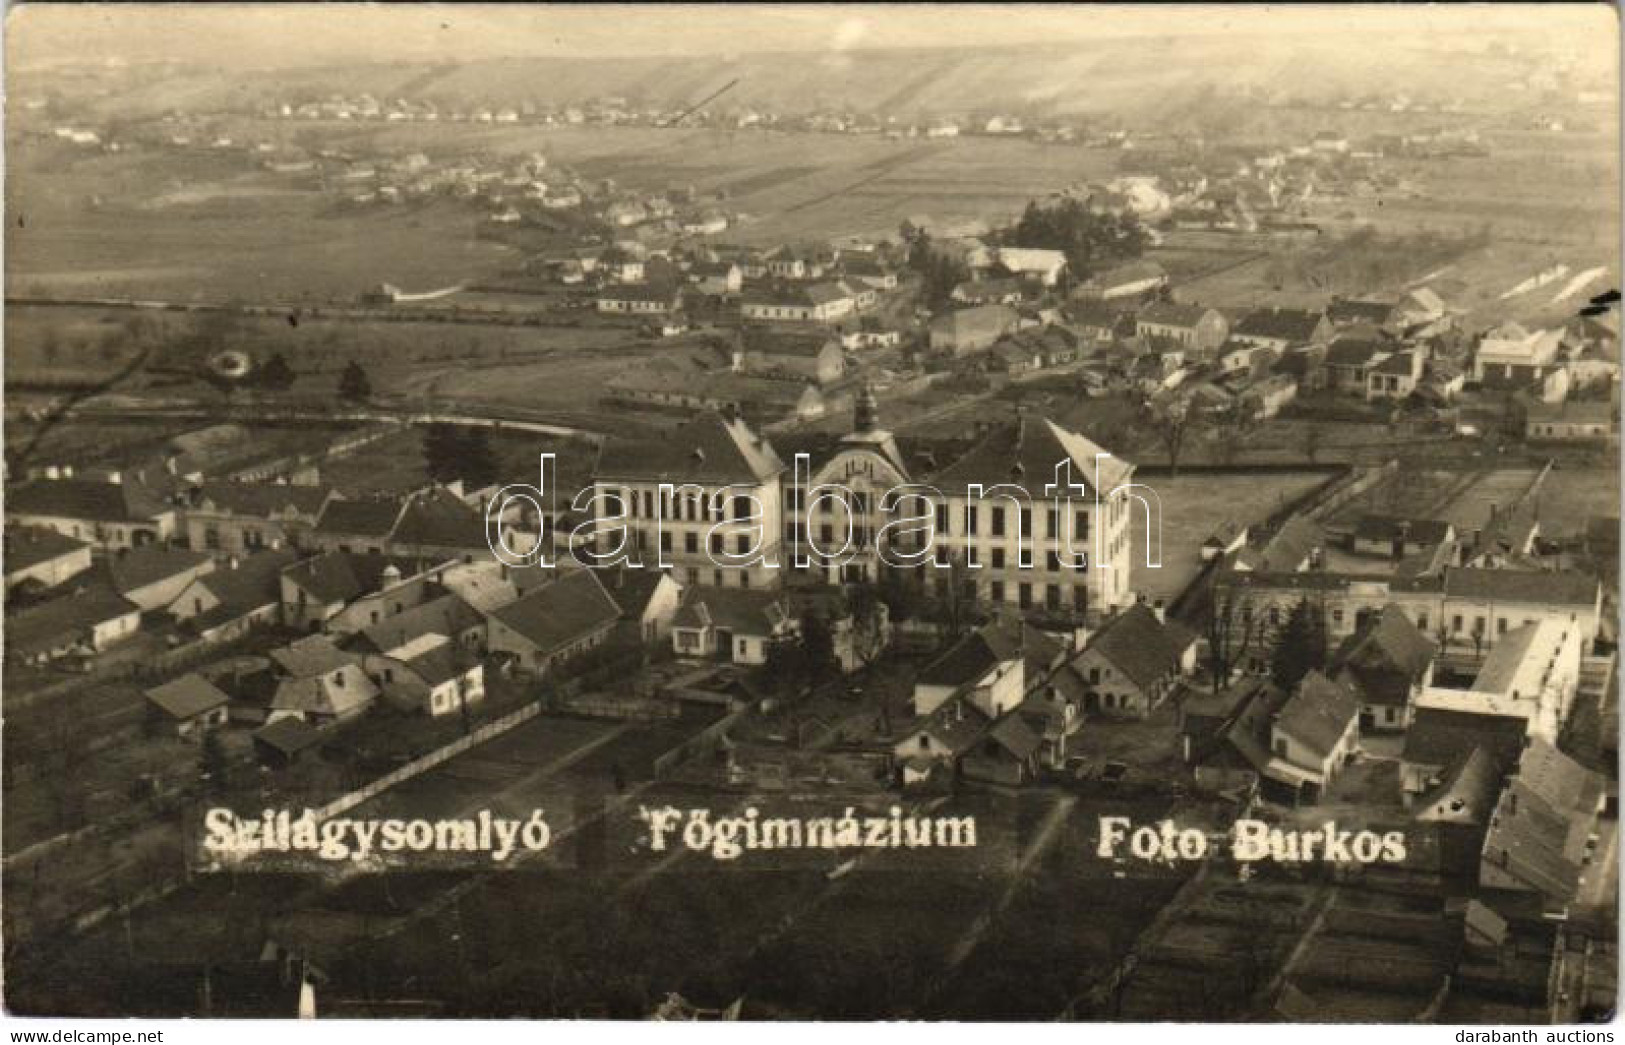 T2 Szilágysomlyó, Simleu Silvaniei; Főgimnázium / Grammar School. Foto Burkos Photo + "1940 Szilágysomlyó Visszatért" So - Unclassified